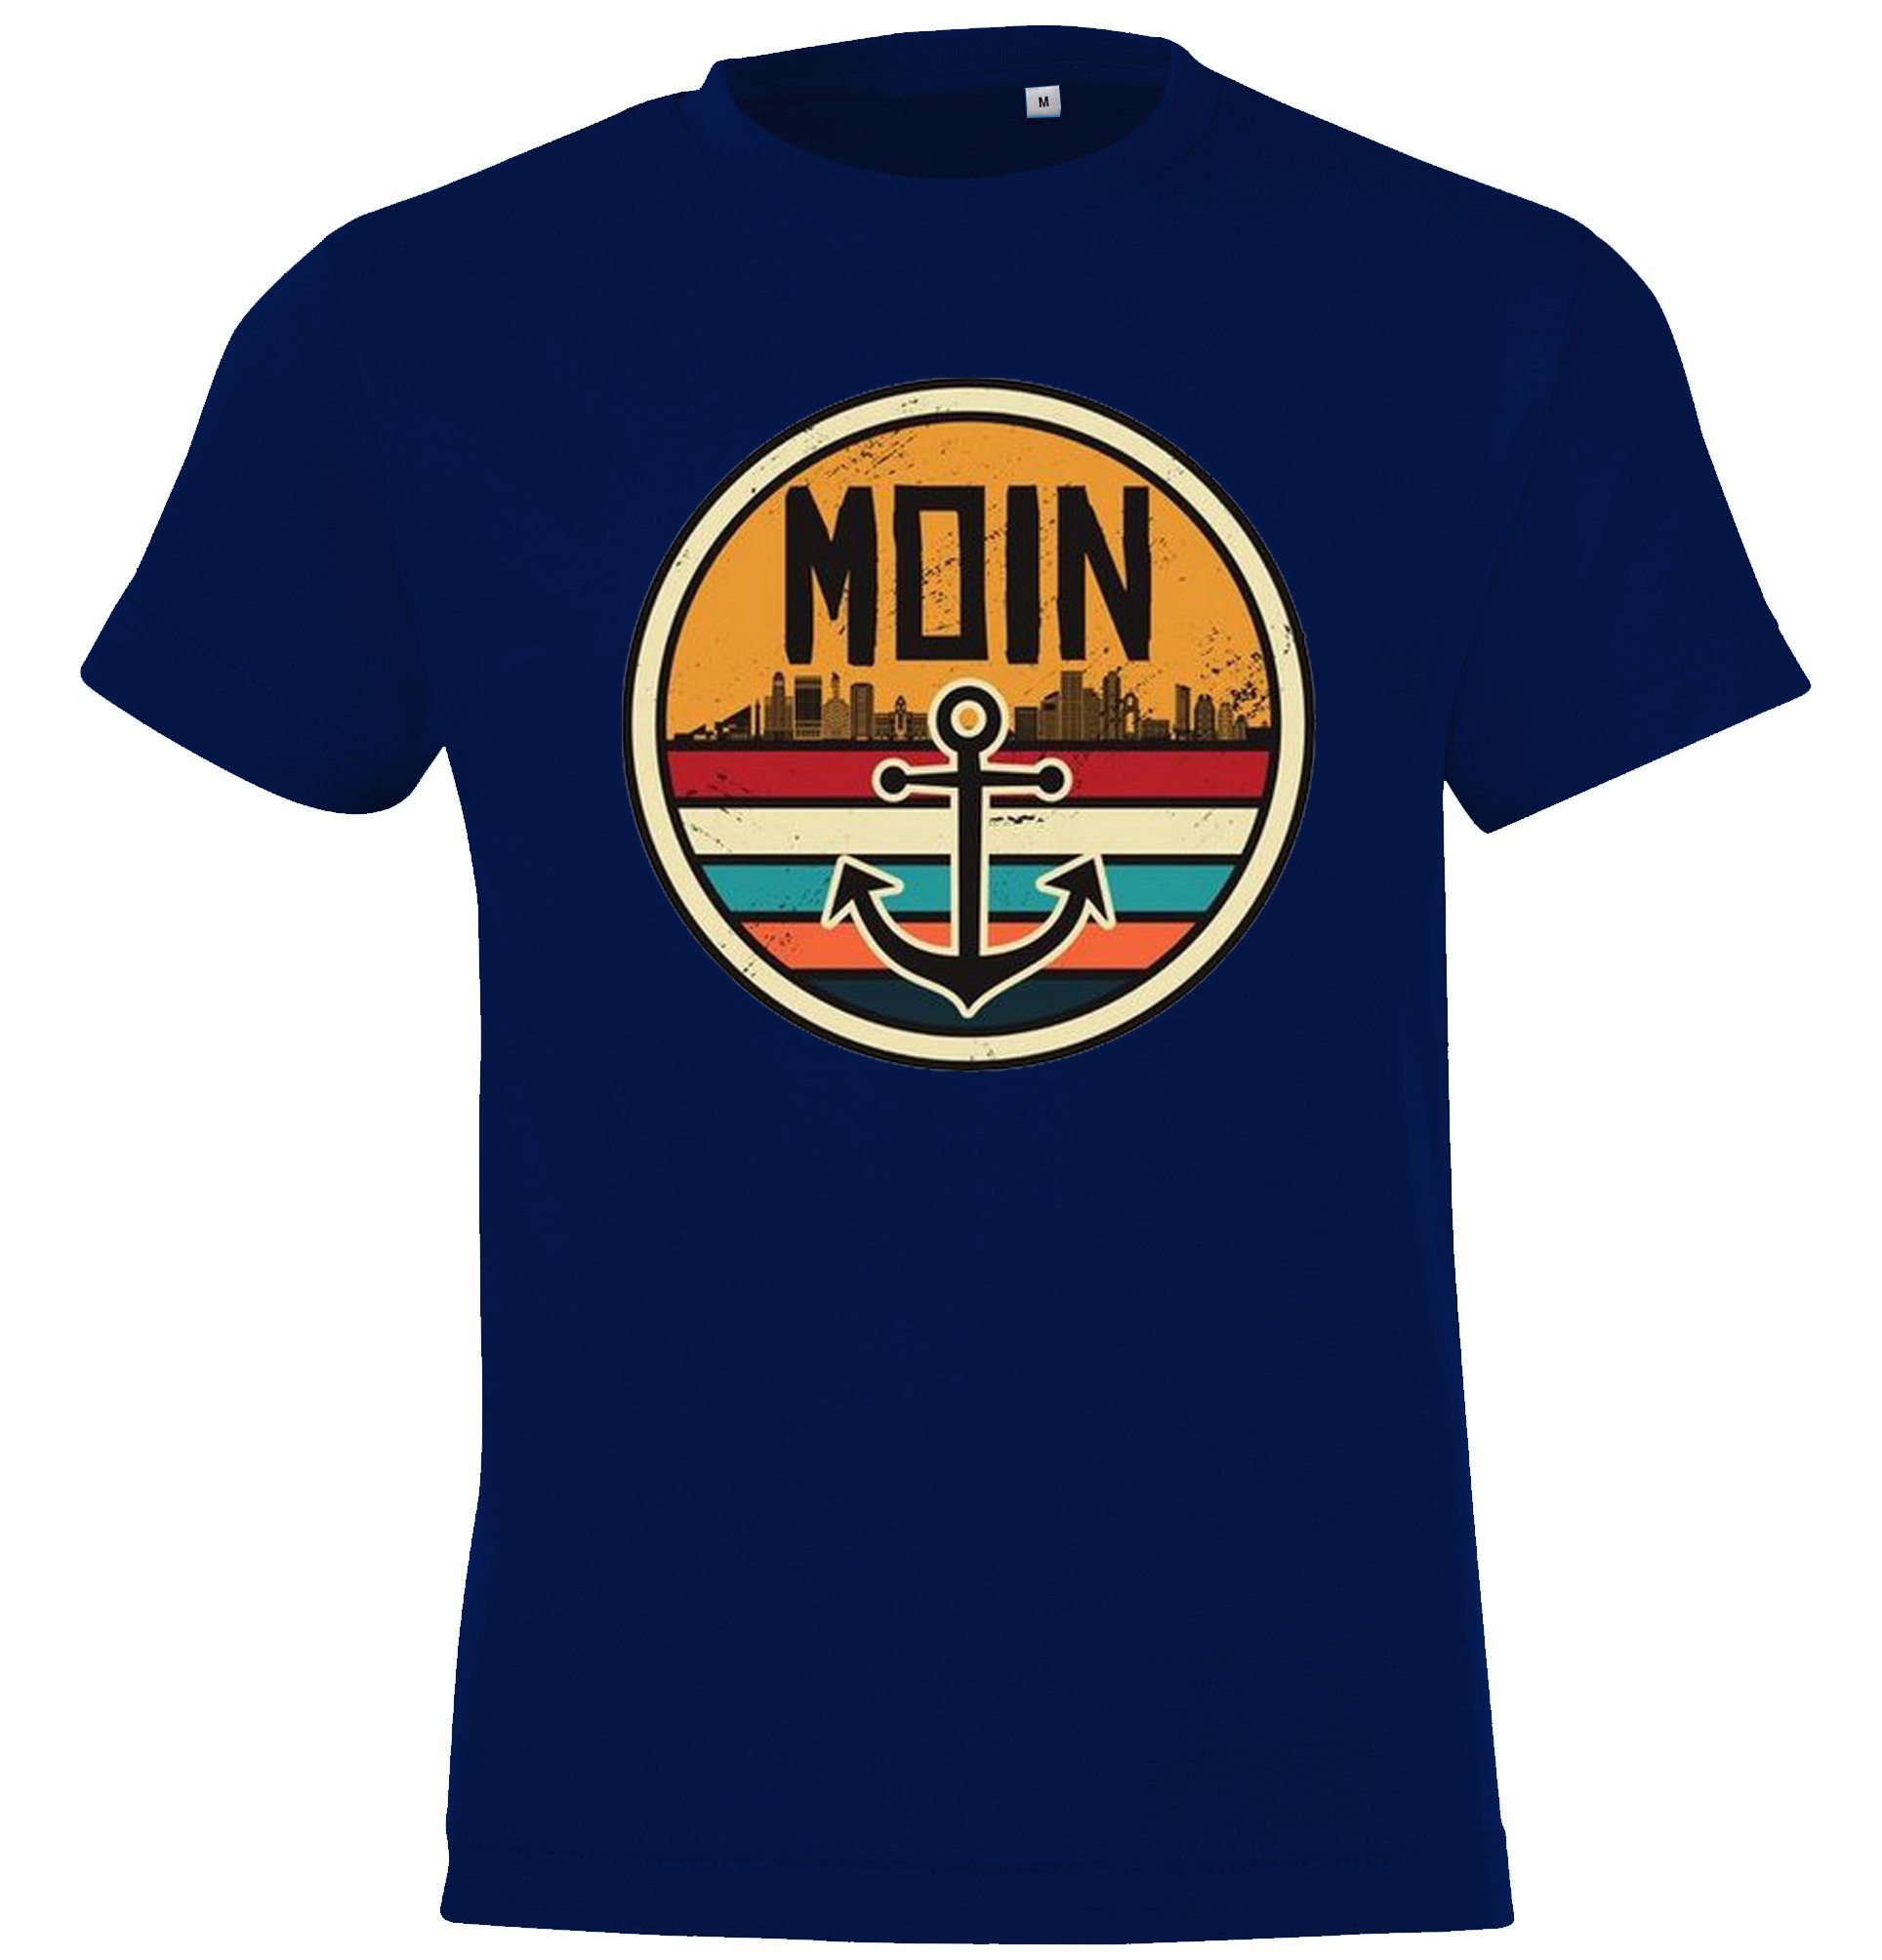 Jungen Youth Kinder Shirt Designz für Frontprint lustigem T-Shirt und mit Moin Mädchen Navyblau